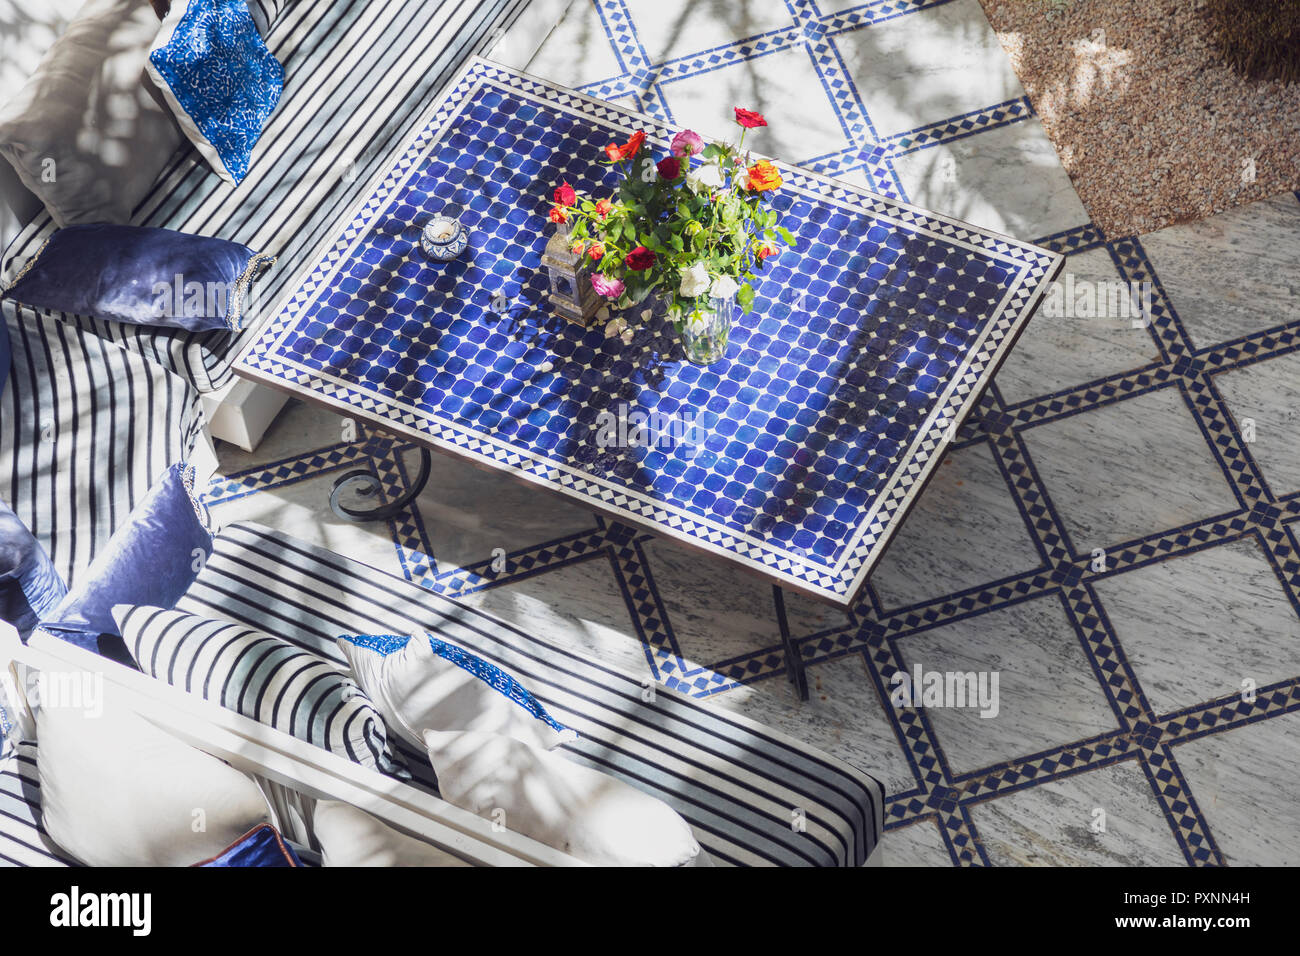 Le Maroc, tableau de carreaux bleus Banque D'Images